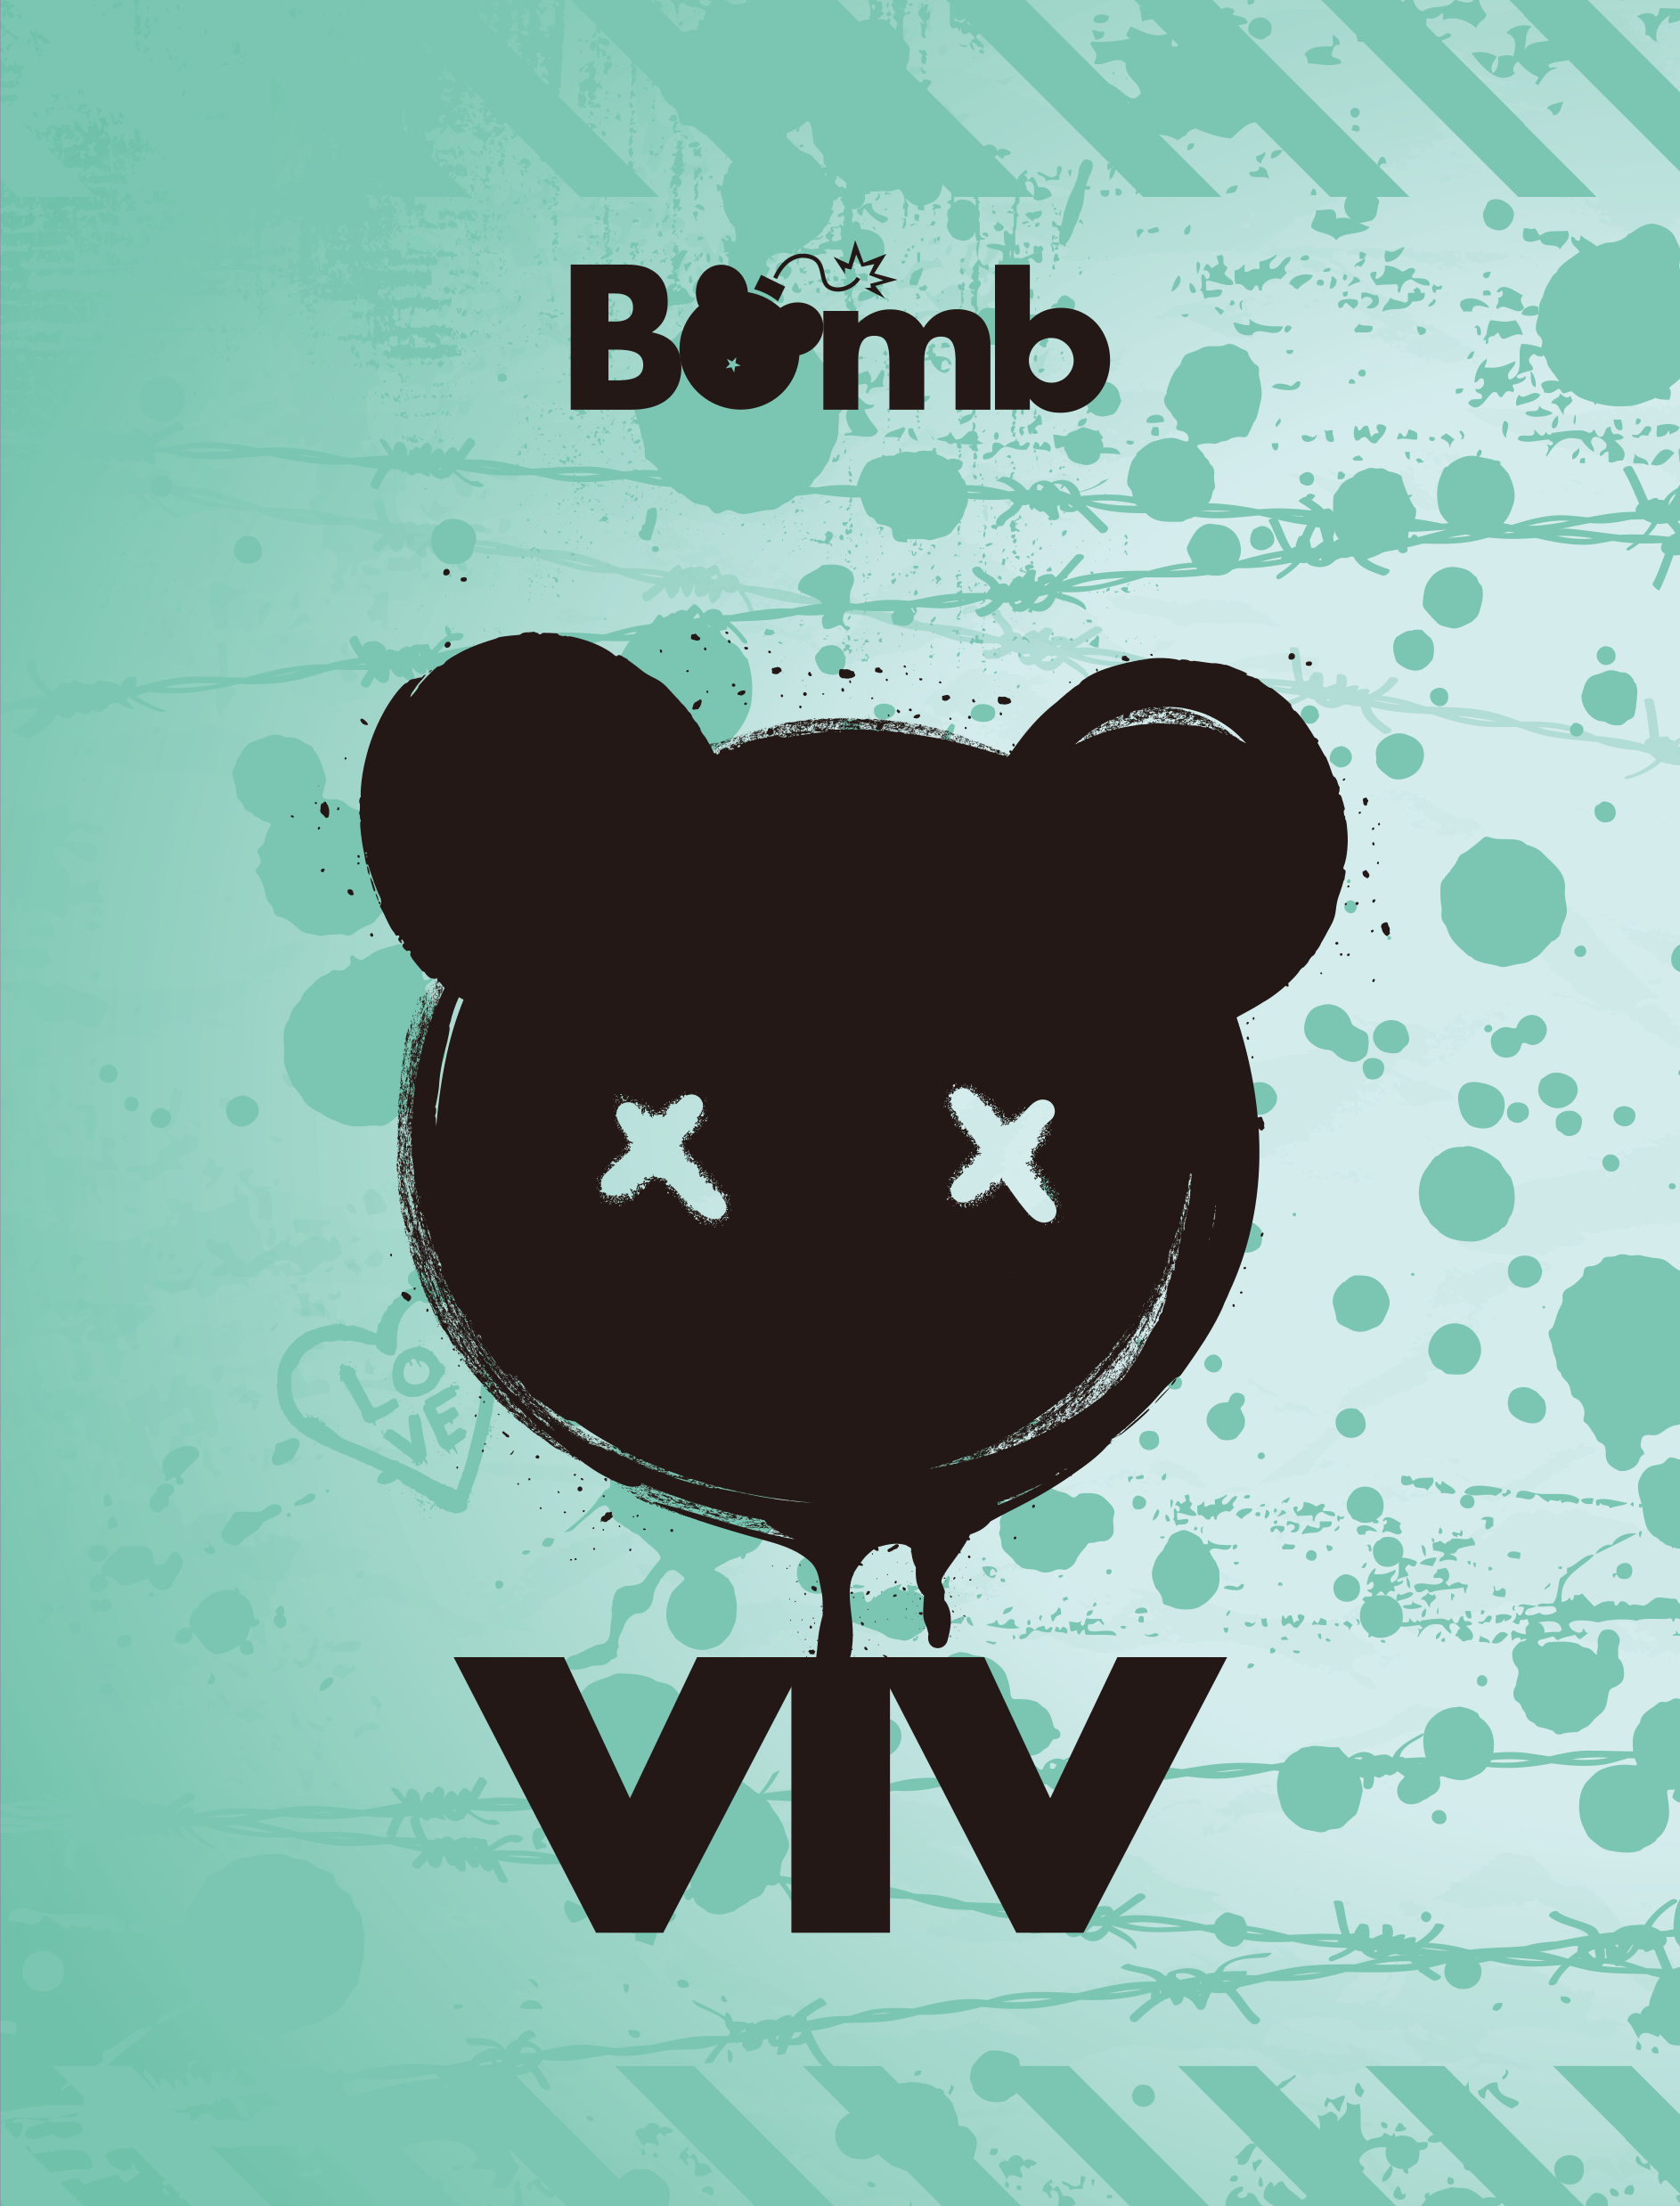 ViV - DEBUT 1ST EP [Bomb] - KPOPHERO